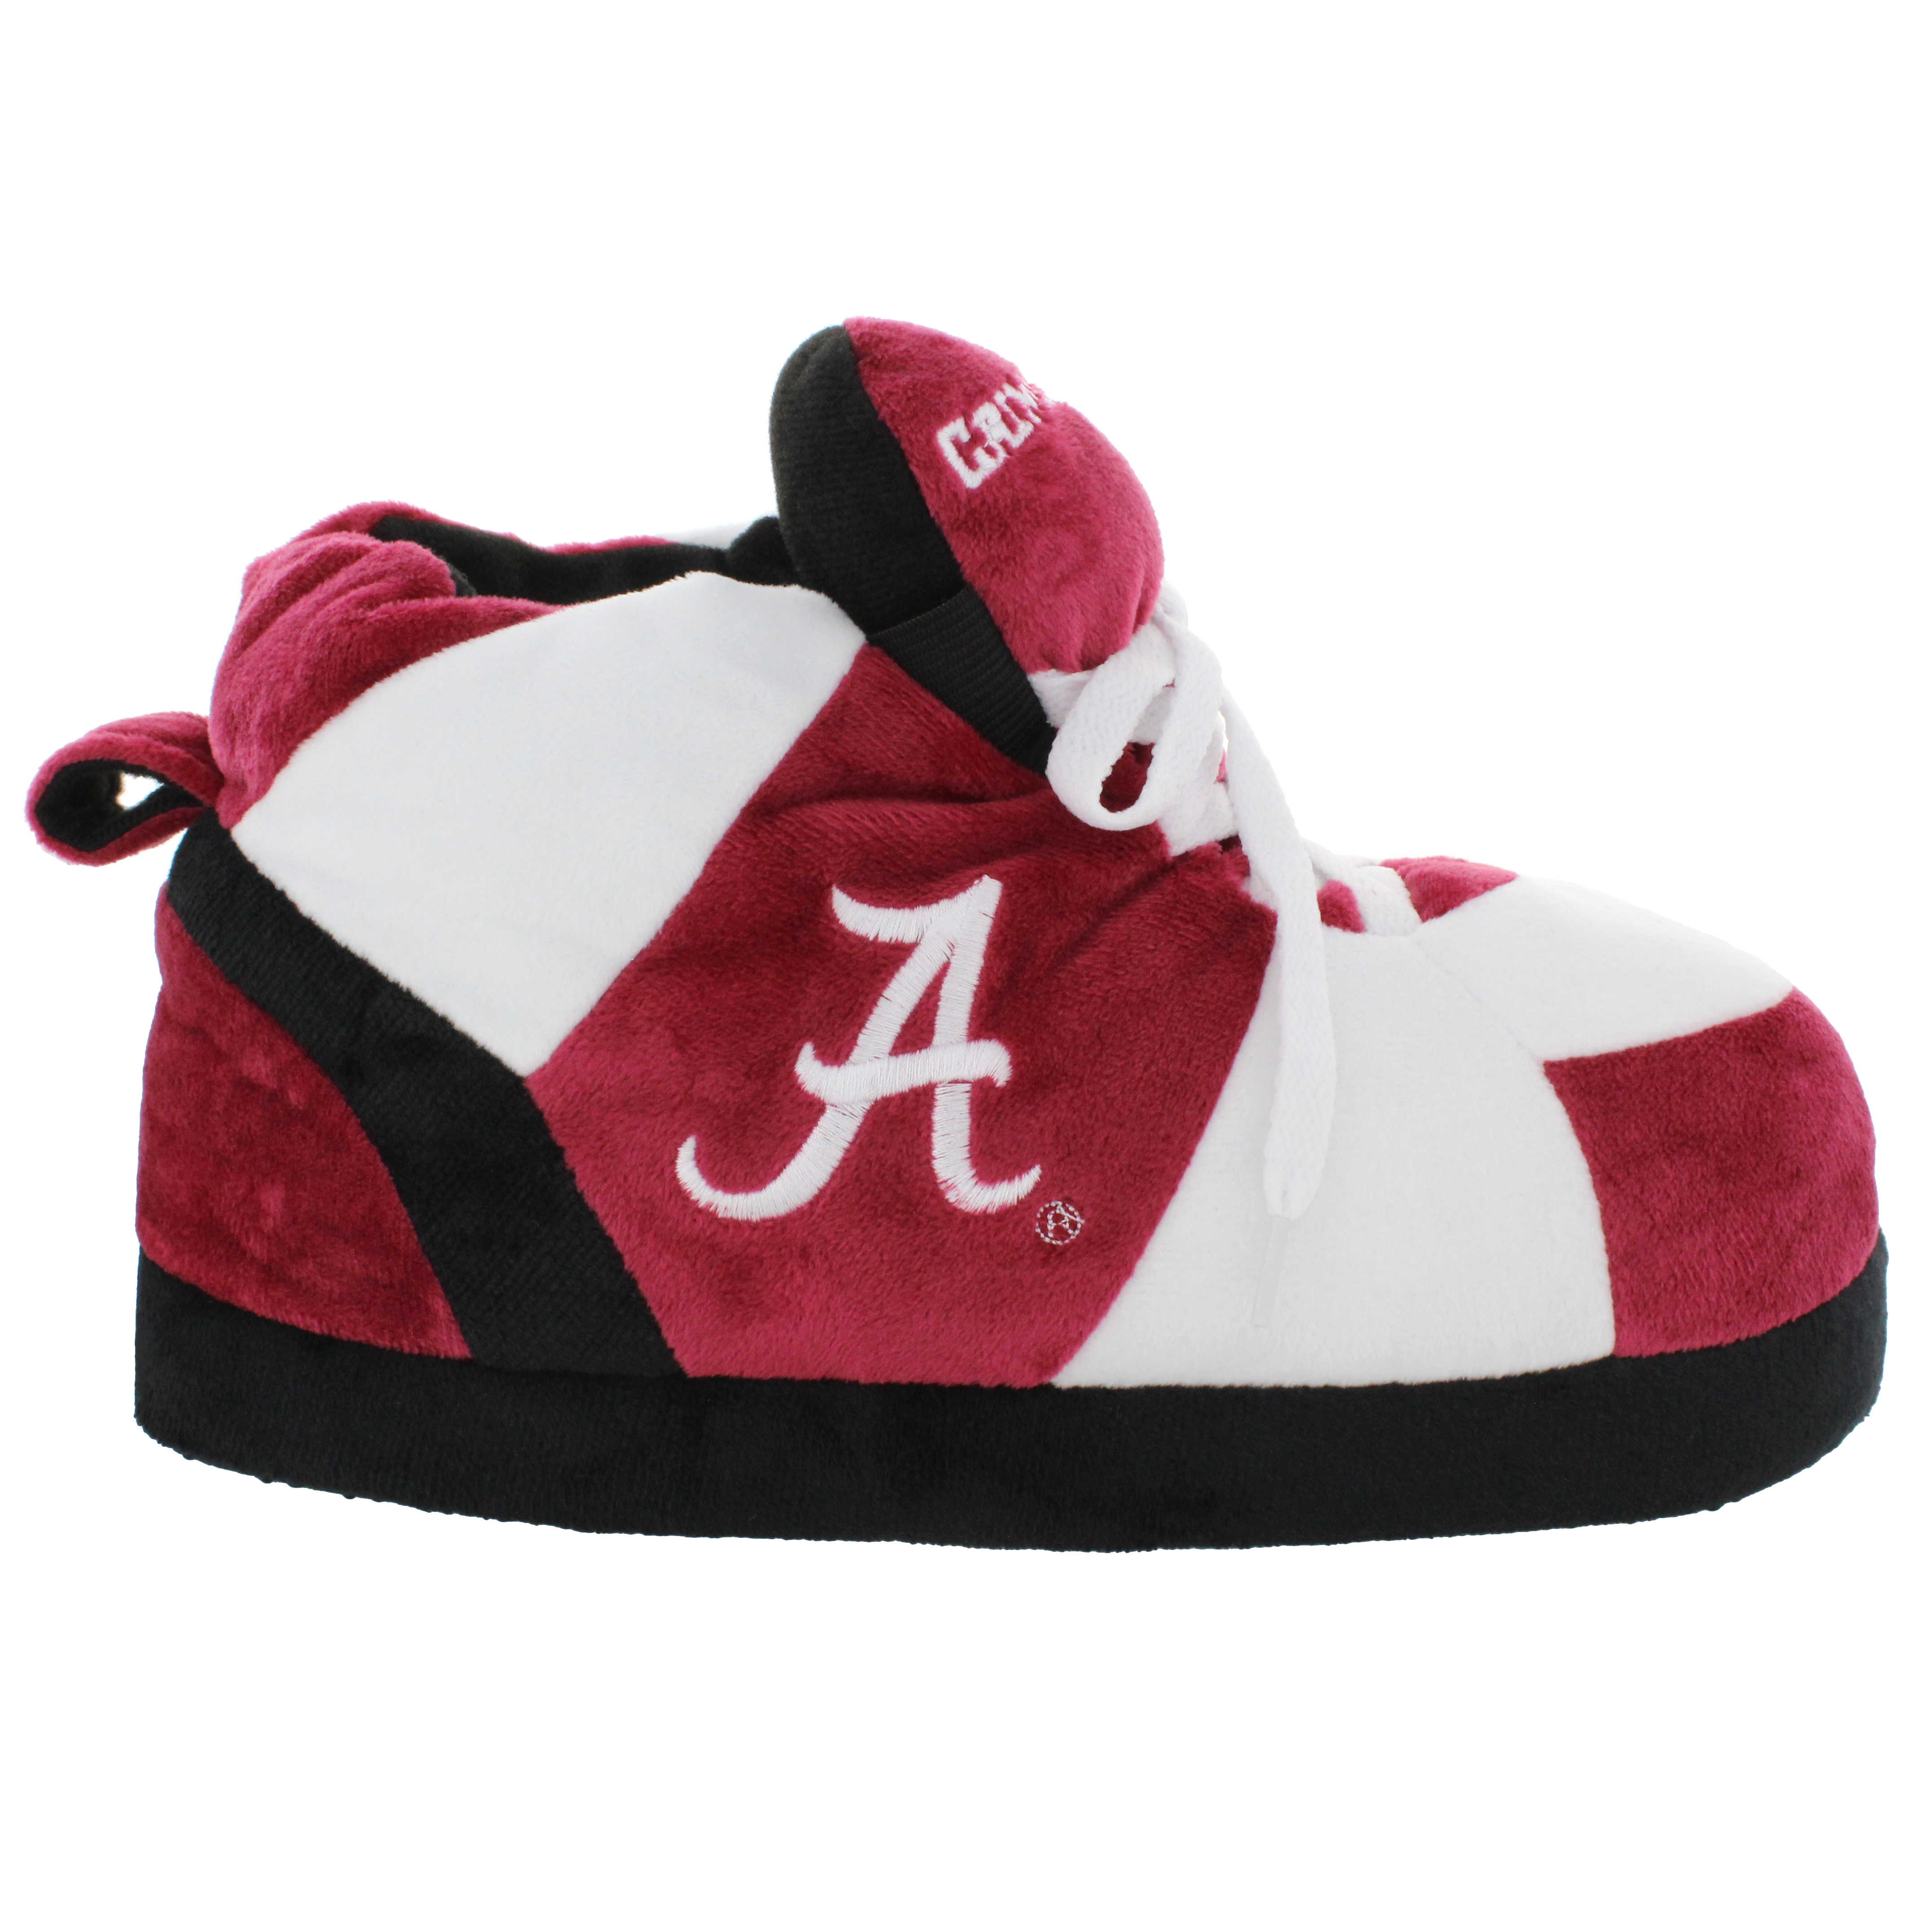 Alabama Crimson Tide Original Comfy Feet Sneaker Slipper, Large - image 2 of 8